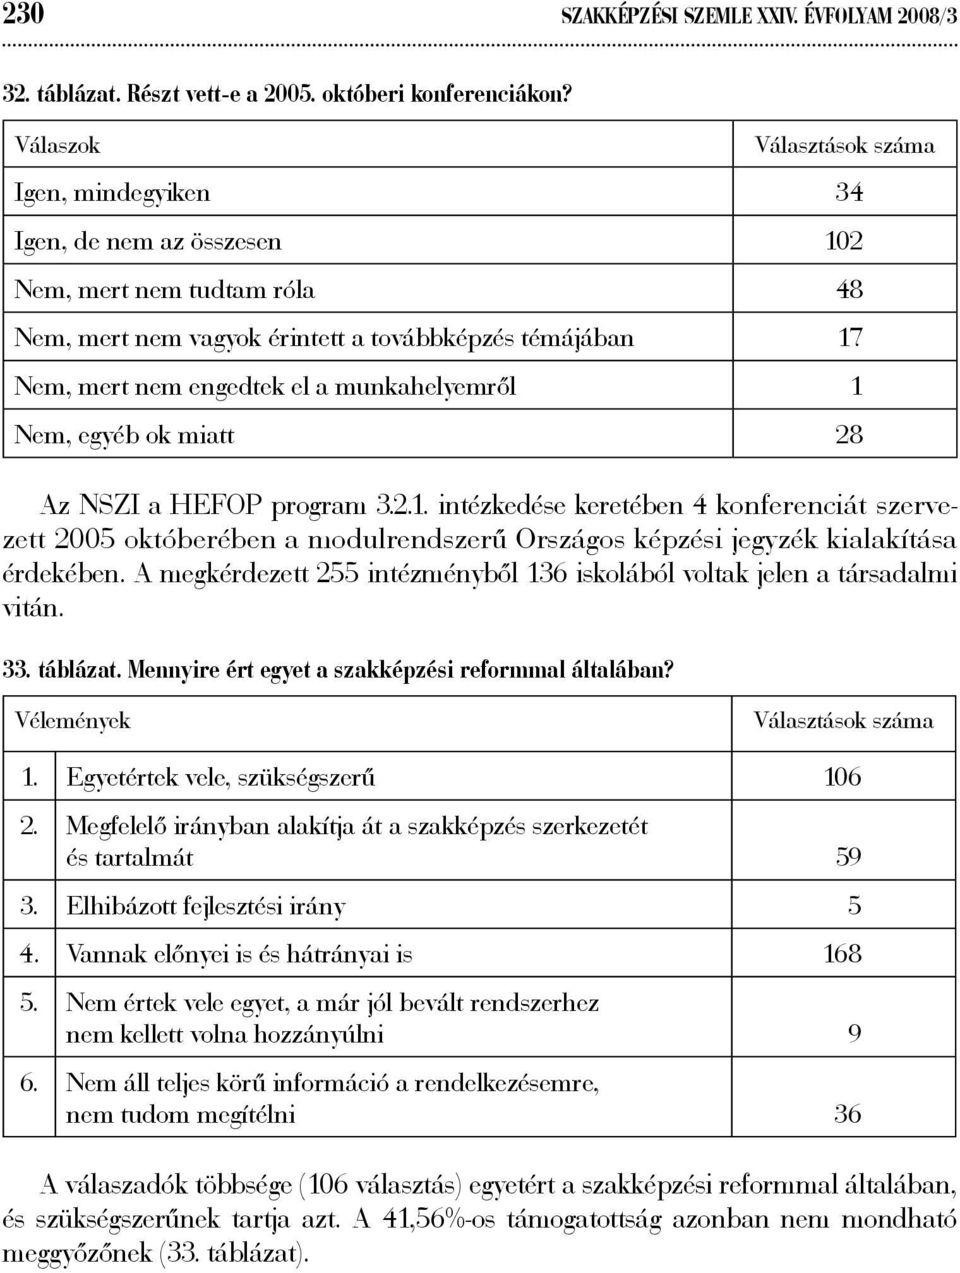 munkahelyemről 1 Nem, egyéb ok miatt 28 Az NSZI a HEFOP program 3.2.1. intézkedése keretében 4 konferenciát szervezett 2005 októberében a modulrendszerű Országos képzési jegyzék kialakítása érdekében.